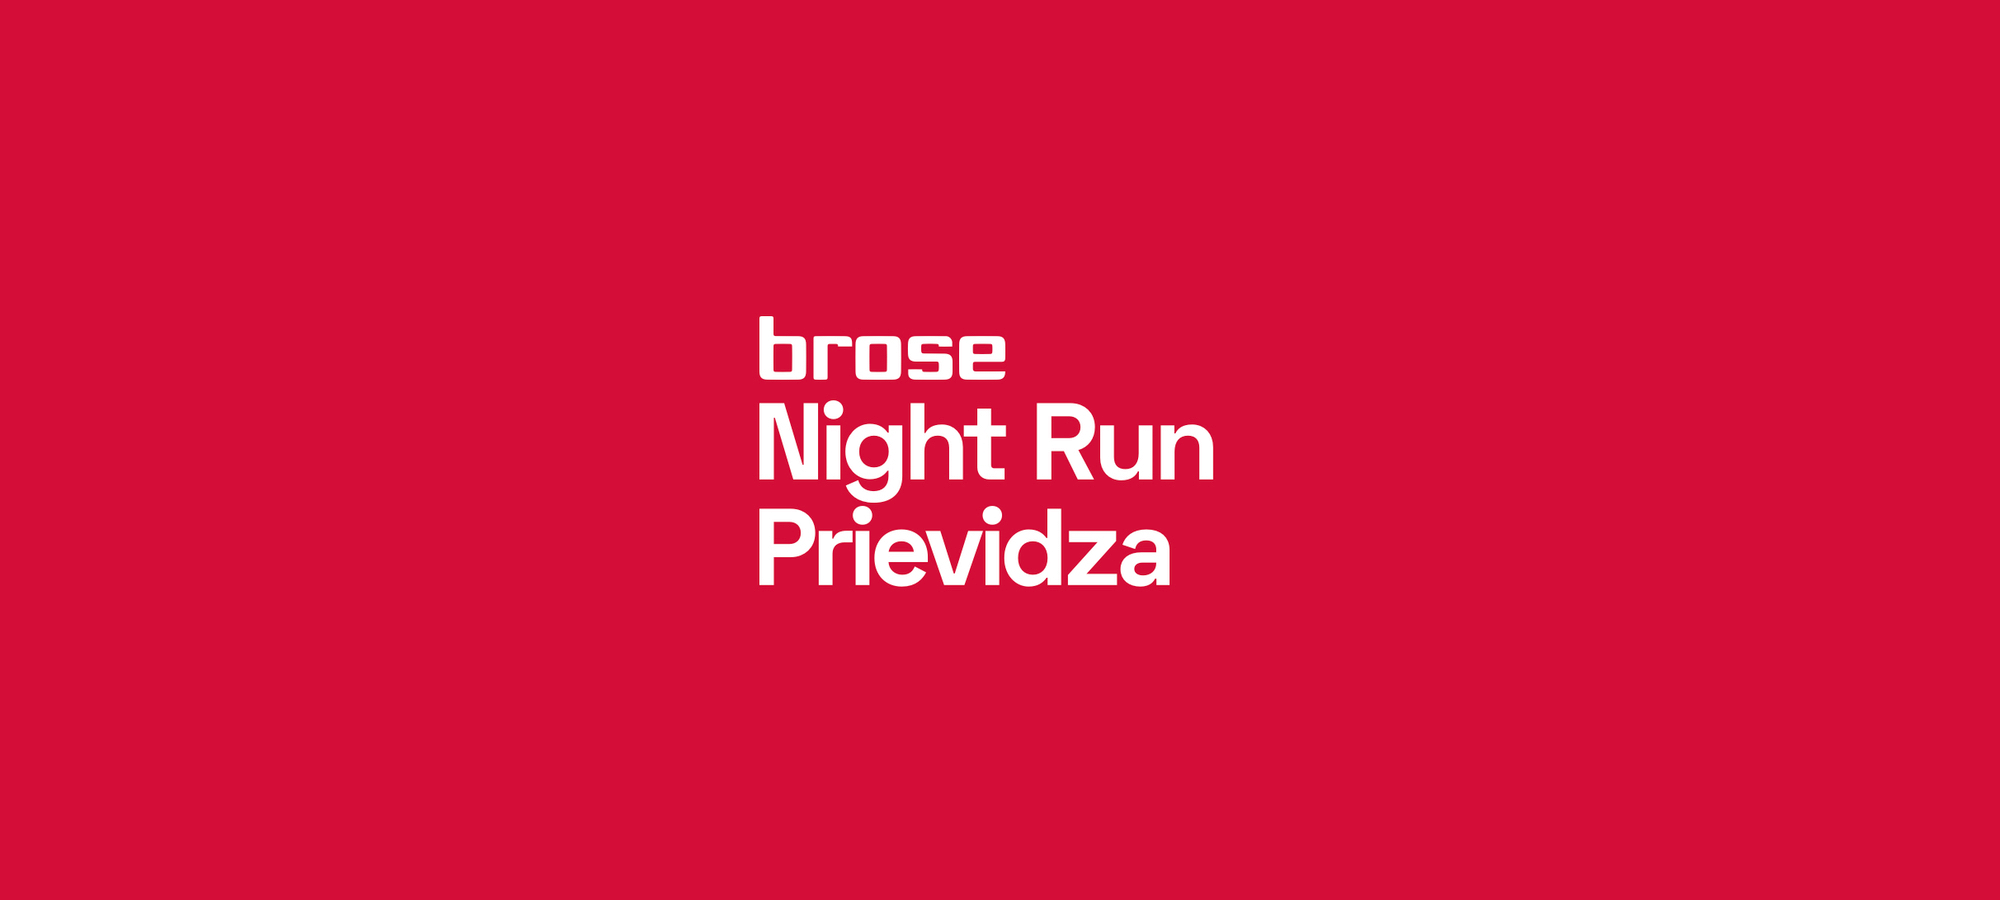 Brose Night Run Prievidza 2020